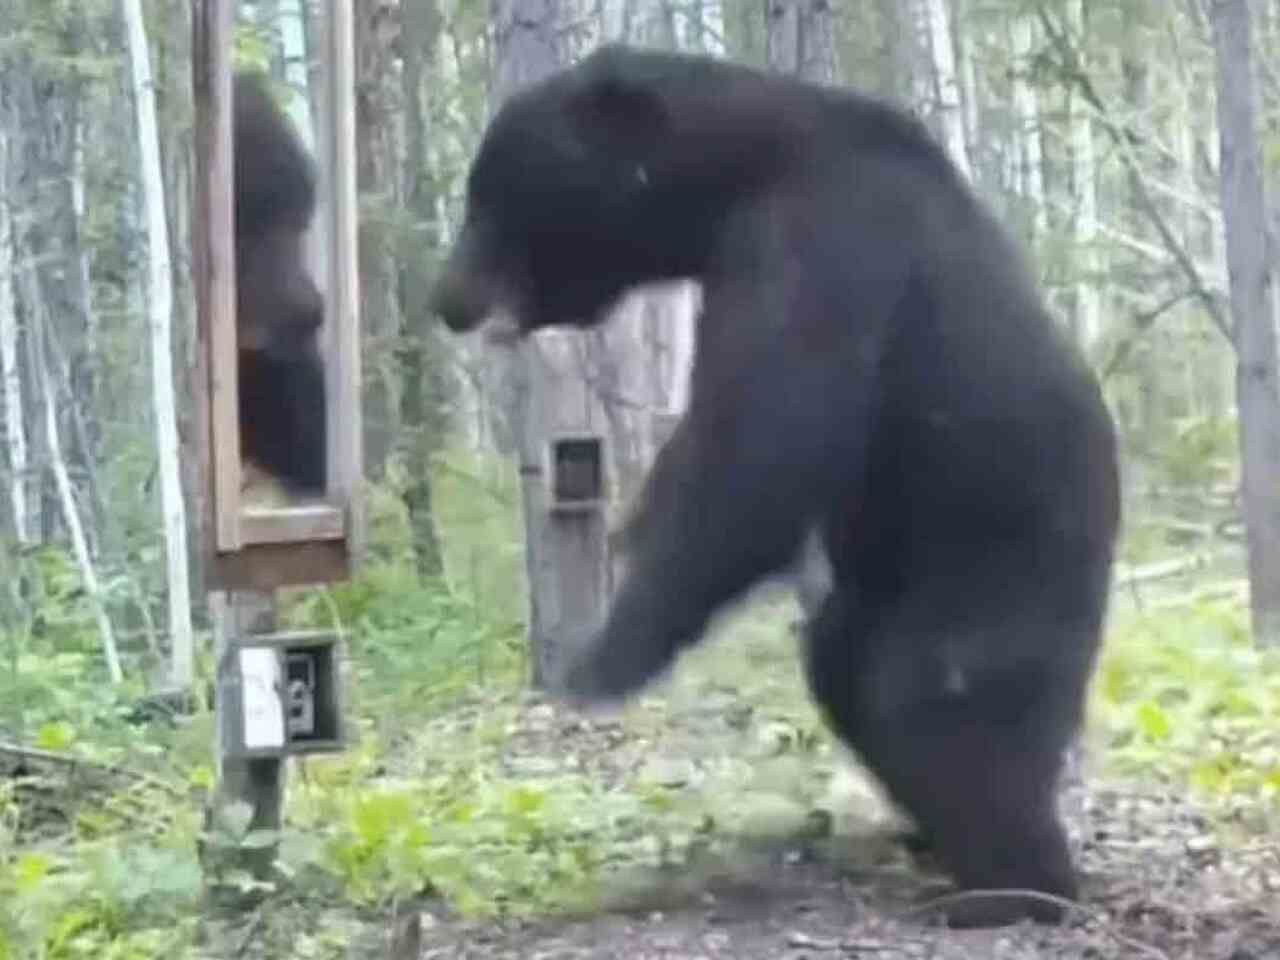 Niedźwiedź szaleje, widząc swoje odbicie w lustrze; Obejrzyj wideo